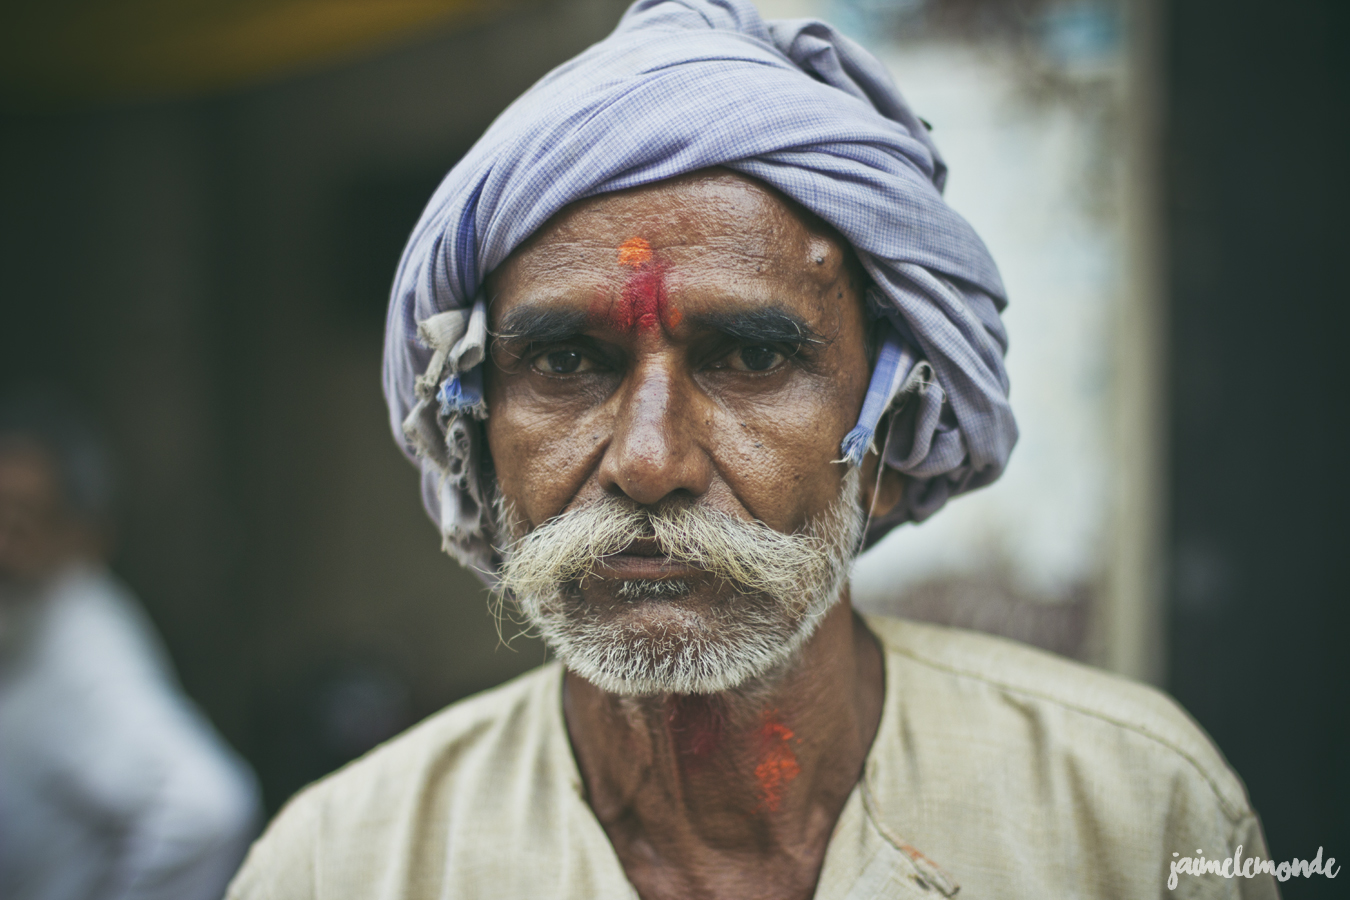 blog voyage - 33 portraits en Inde - ©jaimelemonde (25)